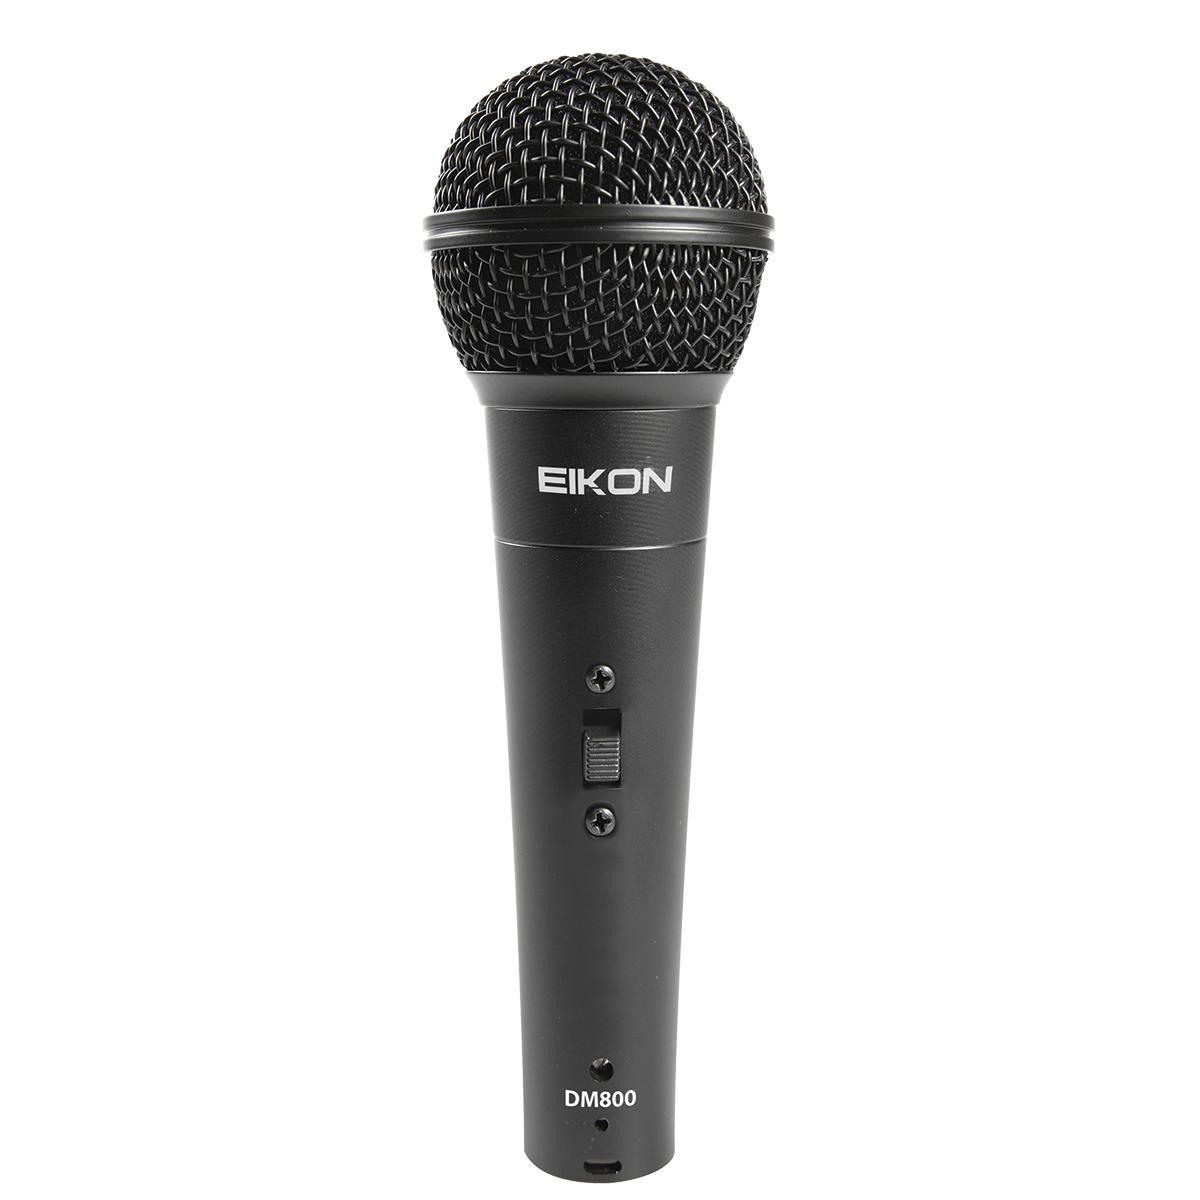 Eikon DM800 Vocal Dynamic Microphone